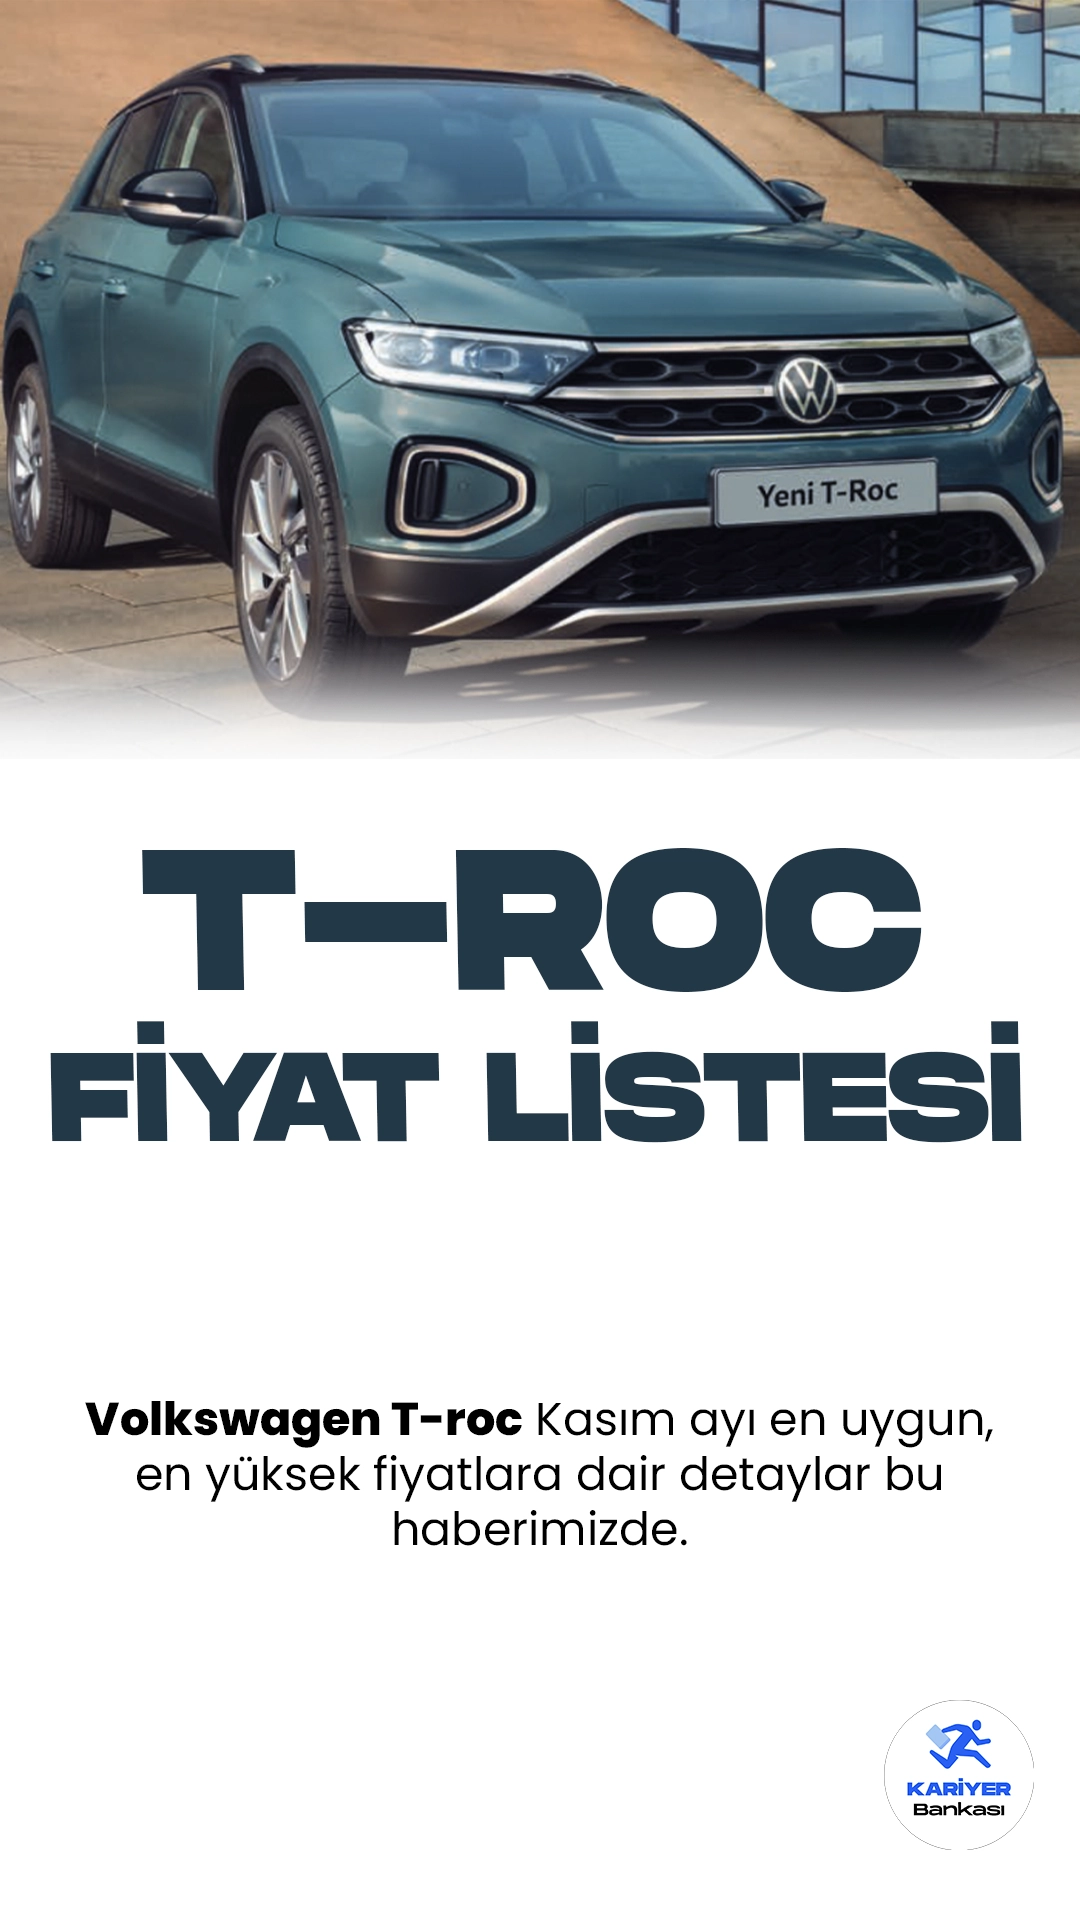 Volkswagen T-Roc Kasım 2023 Fiyat Listesi Yayımlandı.Volkswagen T-Roc, şık tasarımı ve üstün performansıyla dikkat çeken bir araç modeli olarak öne çıkıyor. Alman otomotiv devi Volkswagen tarafından üretilen T-Roc, kompakt SUV segmentinde iddialı bir konuma sahip. Dinamik çizgileri, geniş iç mekanı ve yüksek sürüş konforuyla kullanıcıları cezbetmeyi hedefliyor.